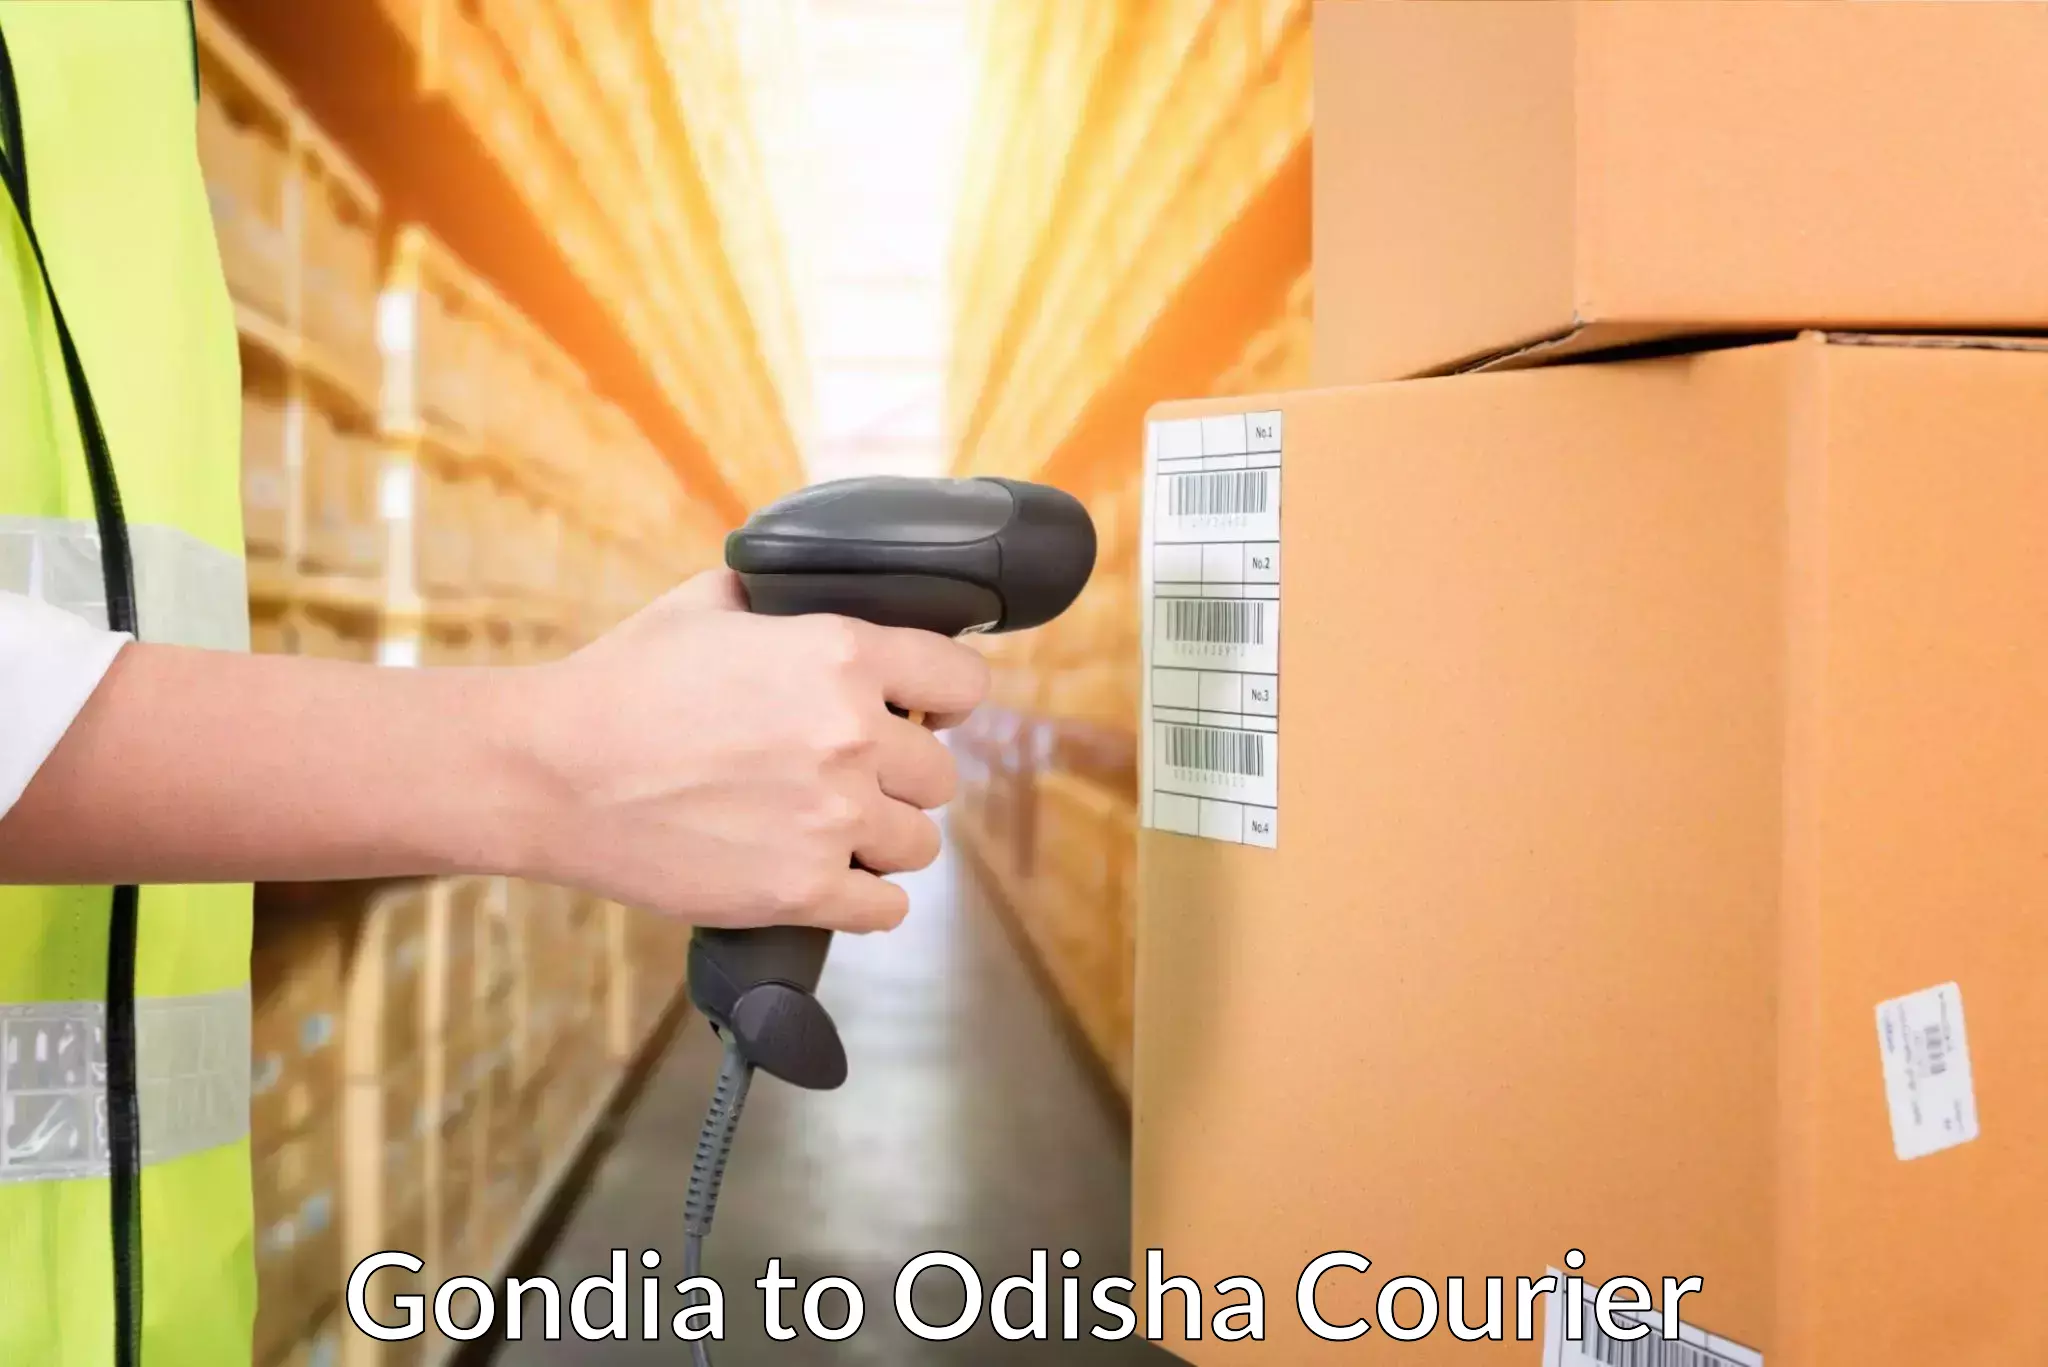 Seamless shipping service Gondia to Baisinga